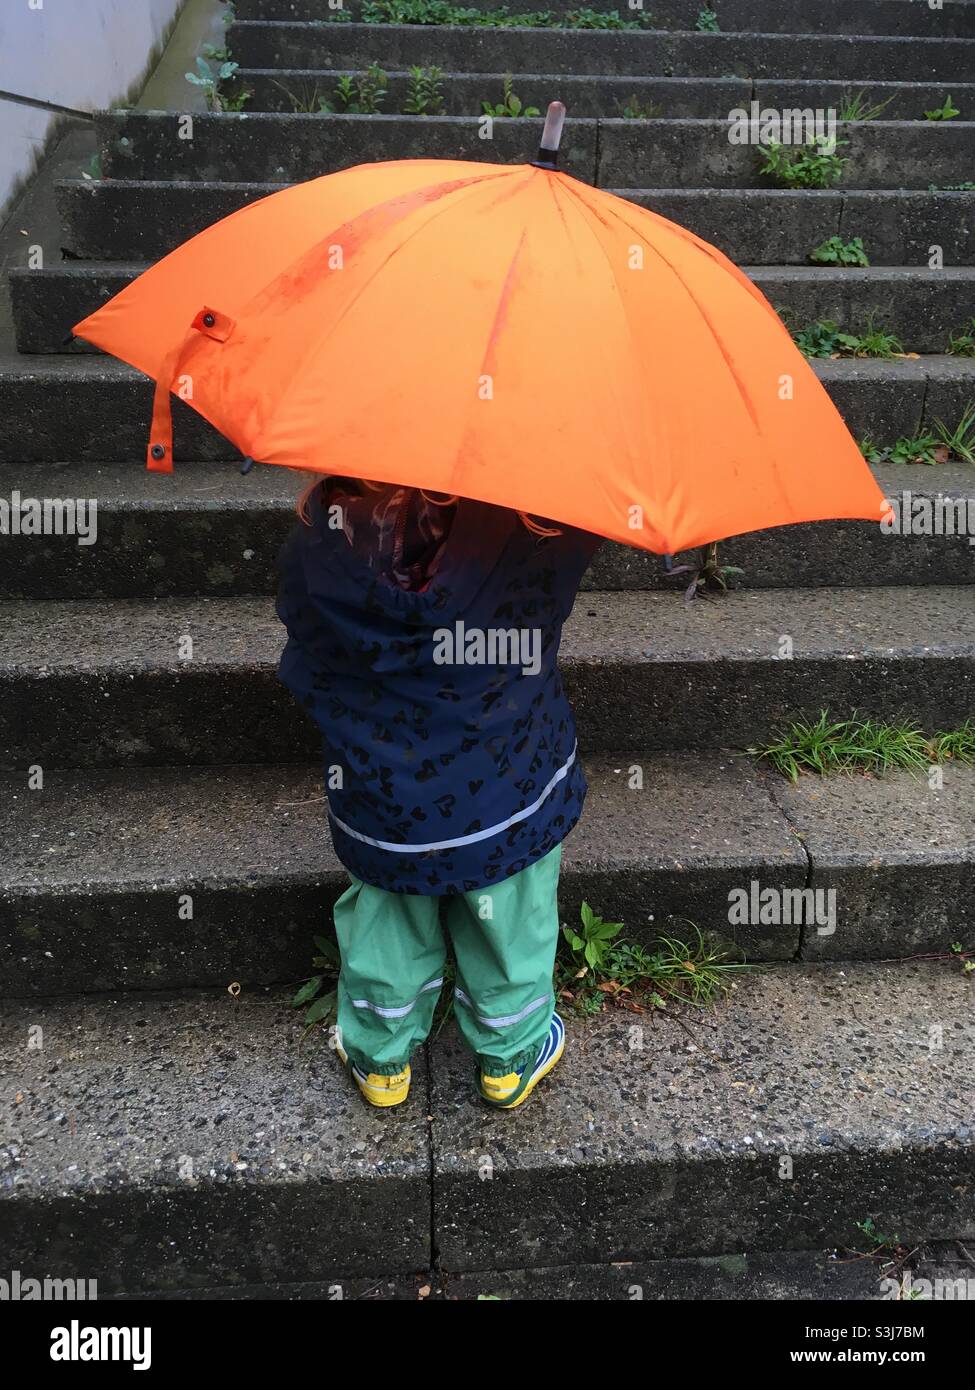 Vista trasera de un niño pequeño con un paraguas naranja grande en una escalera en otoño Foto de stock